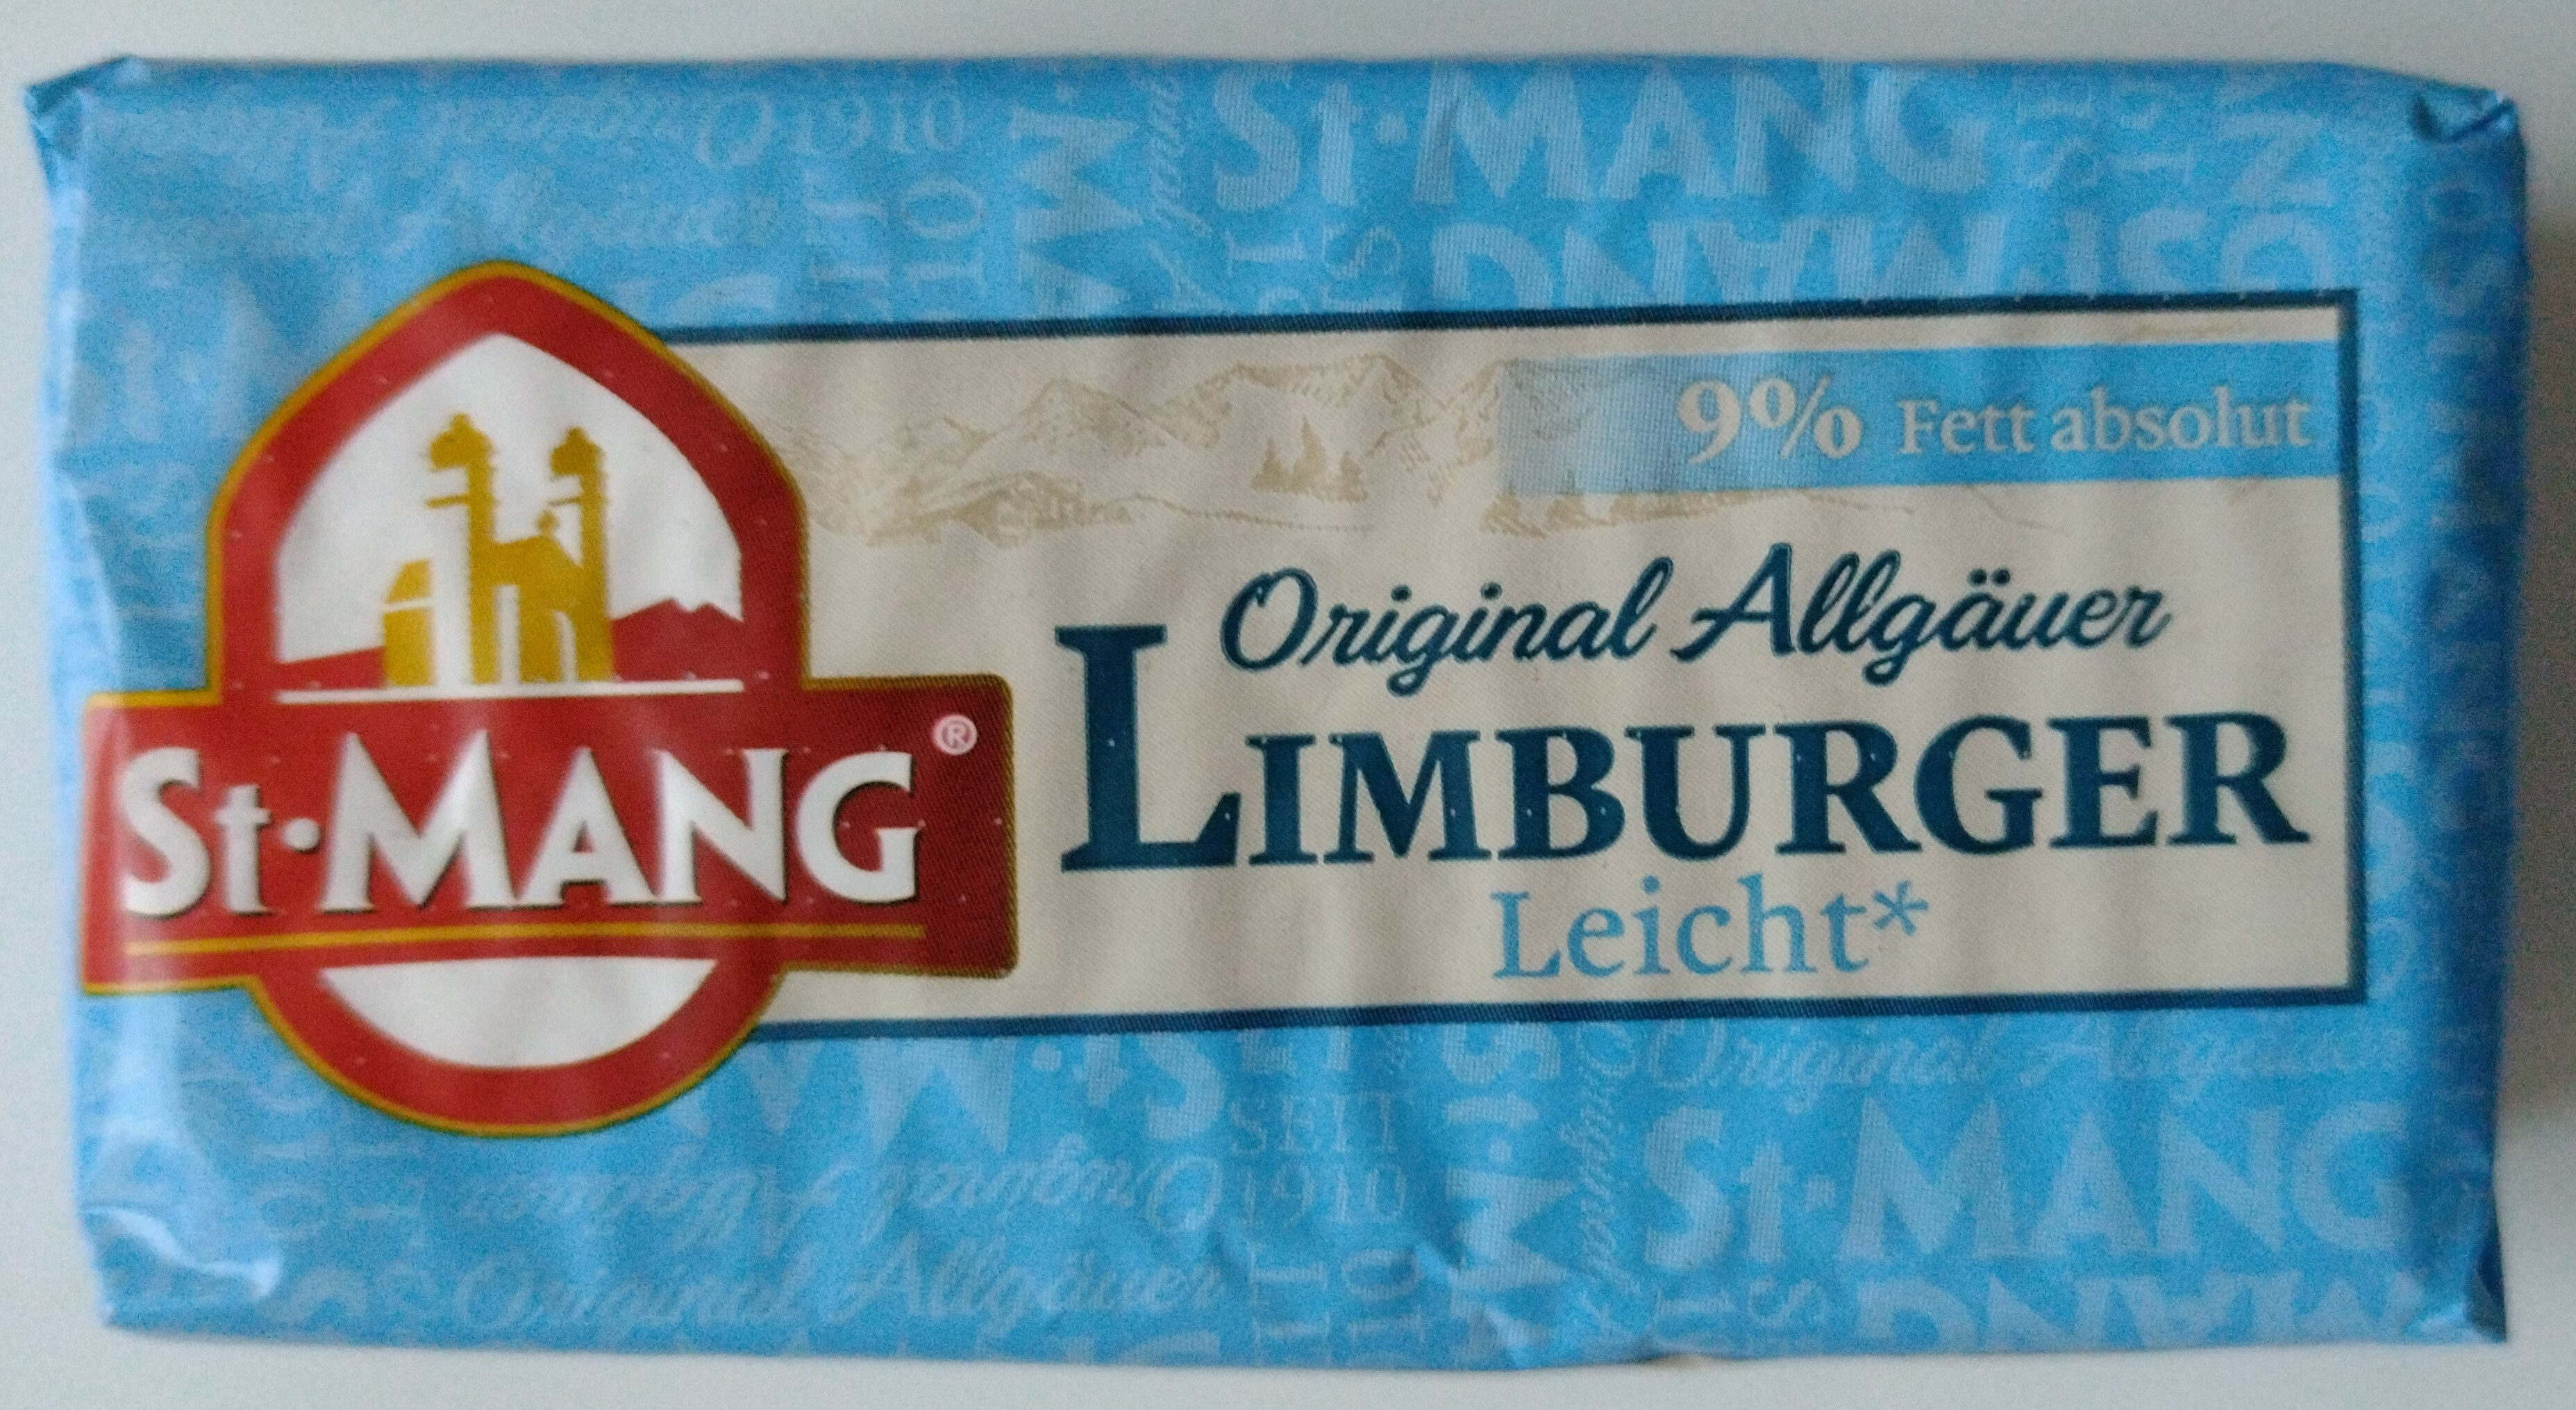 Käse - Limburger Leicht 9% Fett absolut - Produkt